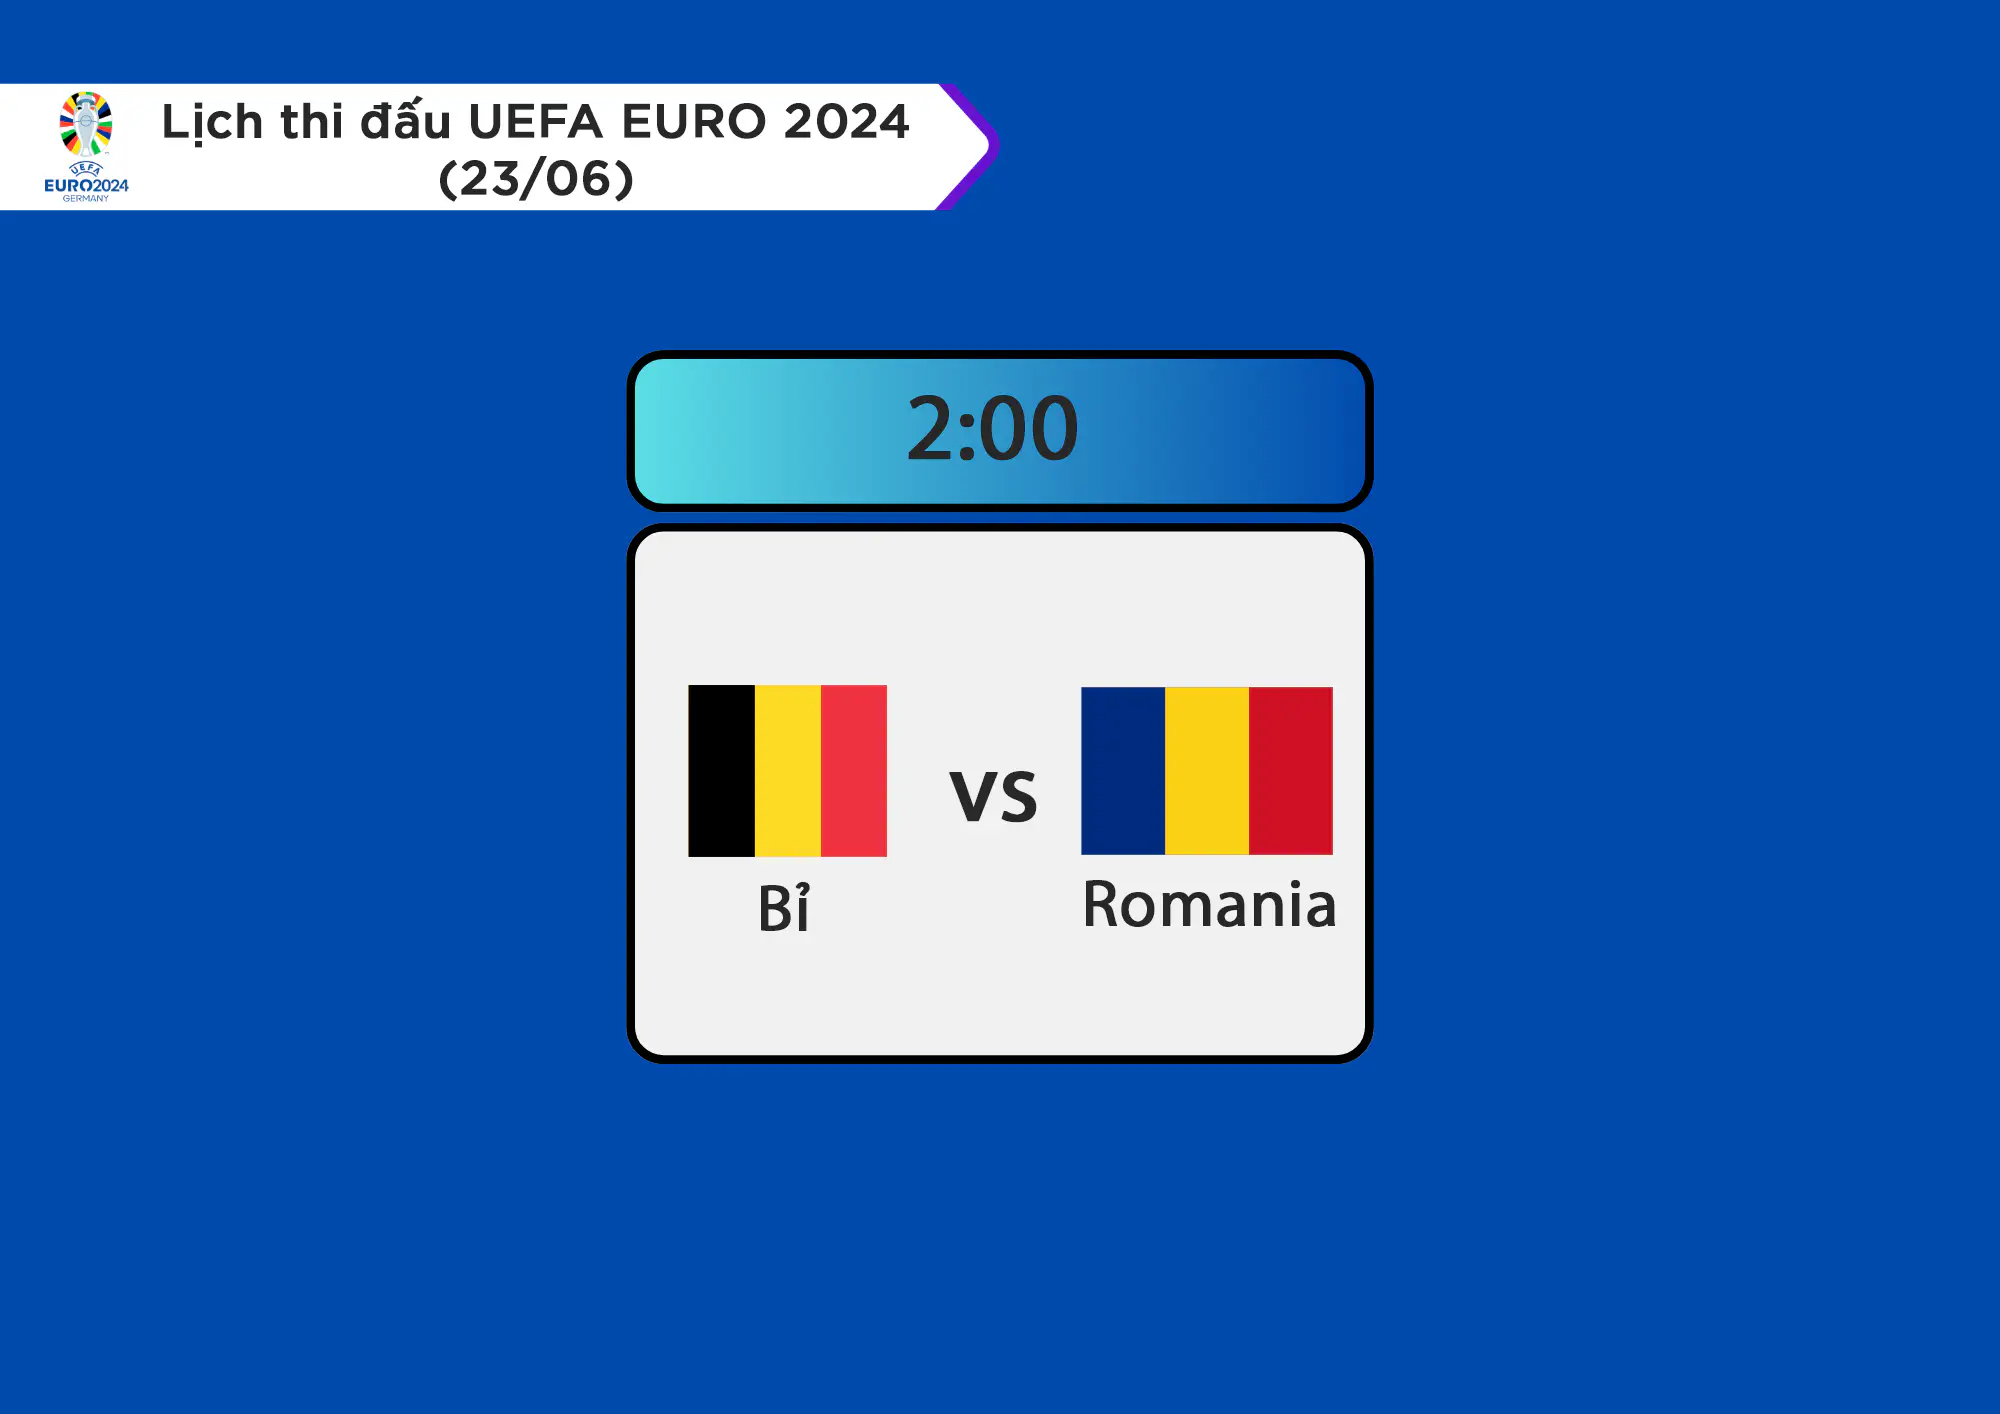 Lịch thi đấu UEFA EURO 2024 ngày 23/06